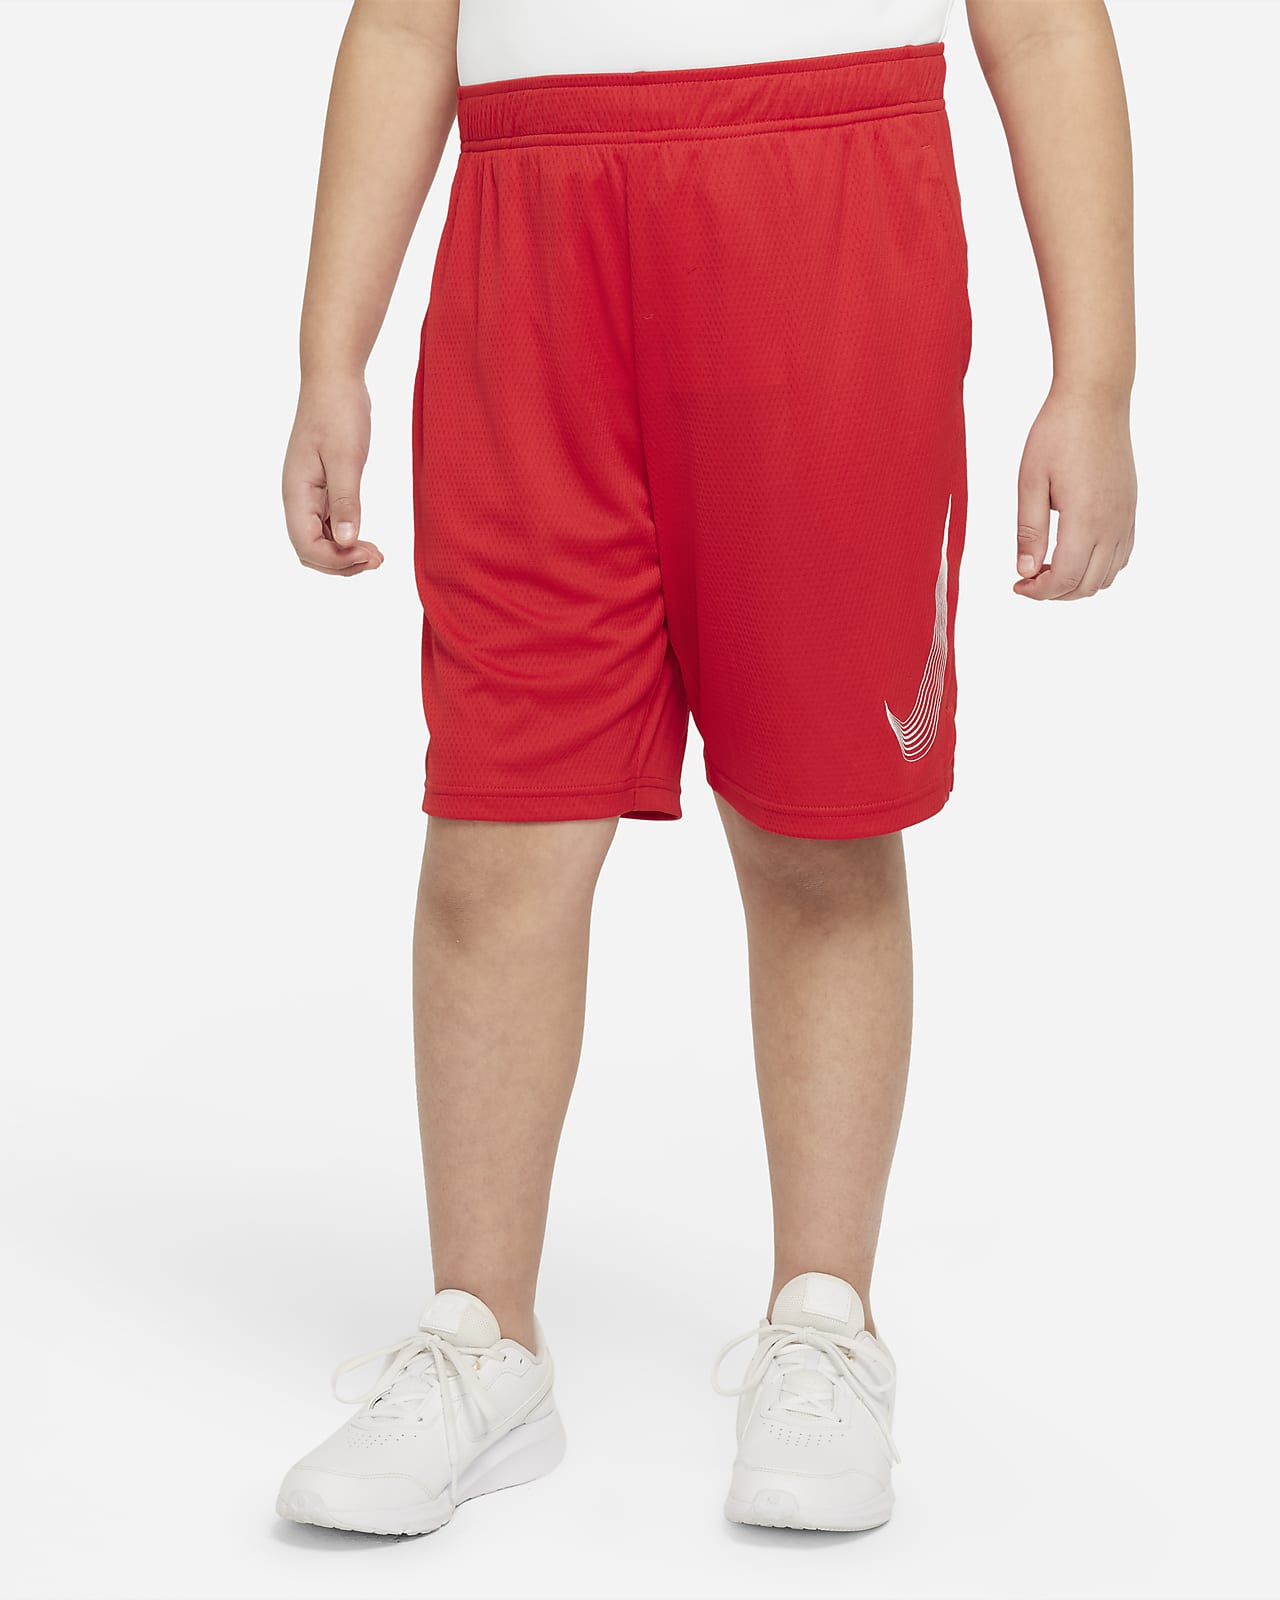 Perjudicial correr reloj Nike Dri-FIT Big Kids' (Boys') Training Shorts (Extended Size). Nike.com